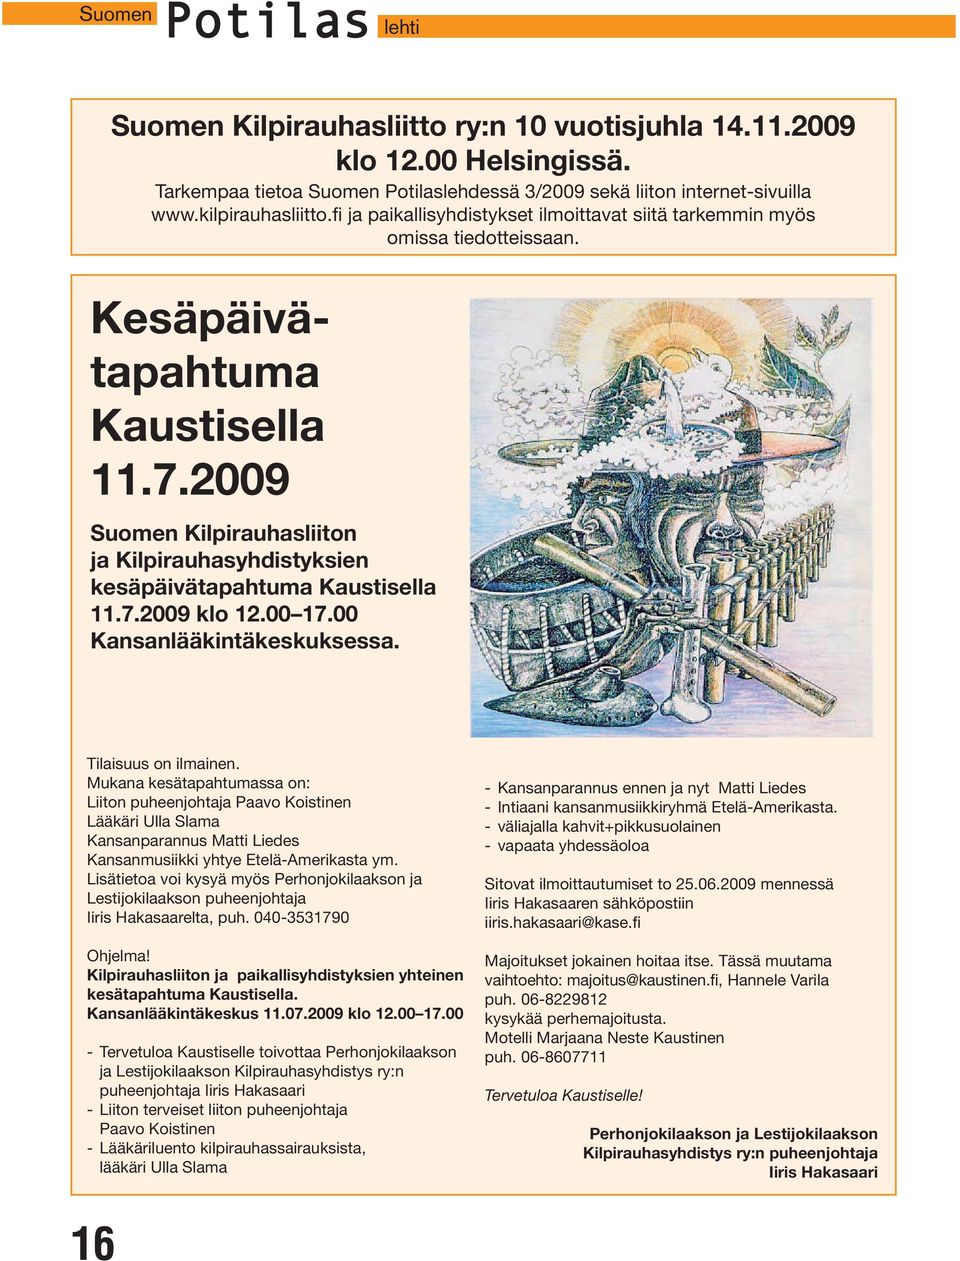 2009 Suomen Kilpirauhasliiton ja Kilpirauhasyhdistyksien kesäpäivätapahtuma Kaustisella 11.7.2009 klo 12.00 17.00 Kansanlääkintäkeskuksessa. Tilaisuus on ilmainen.